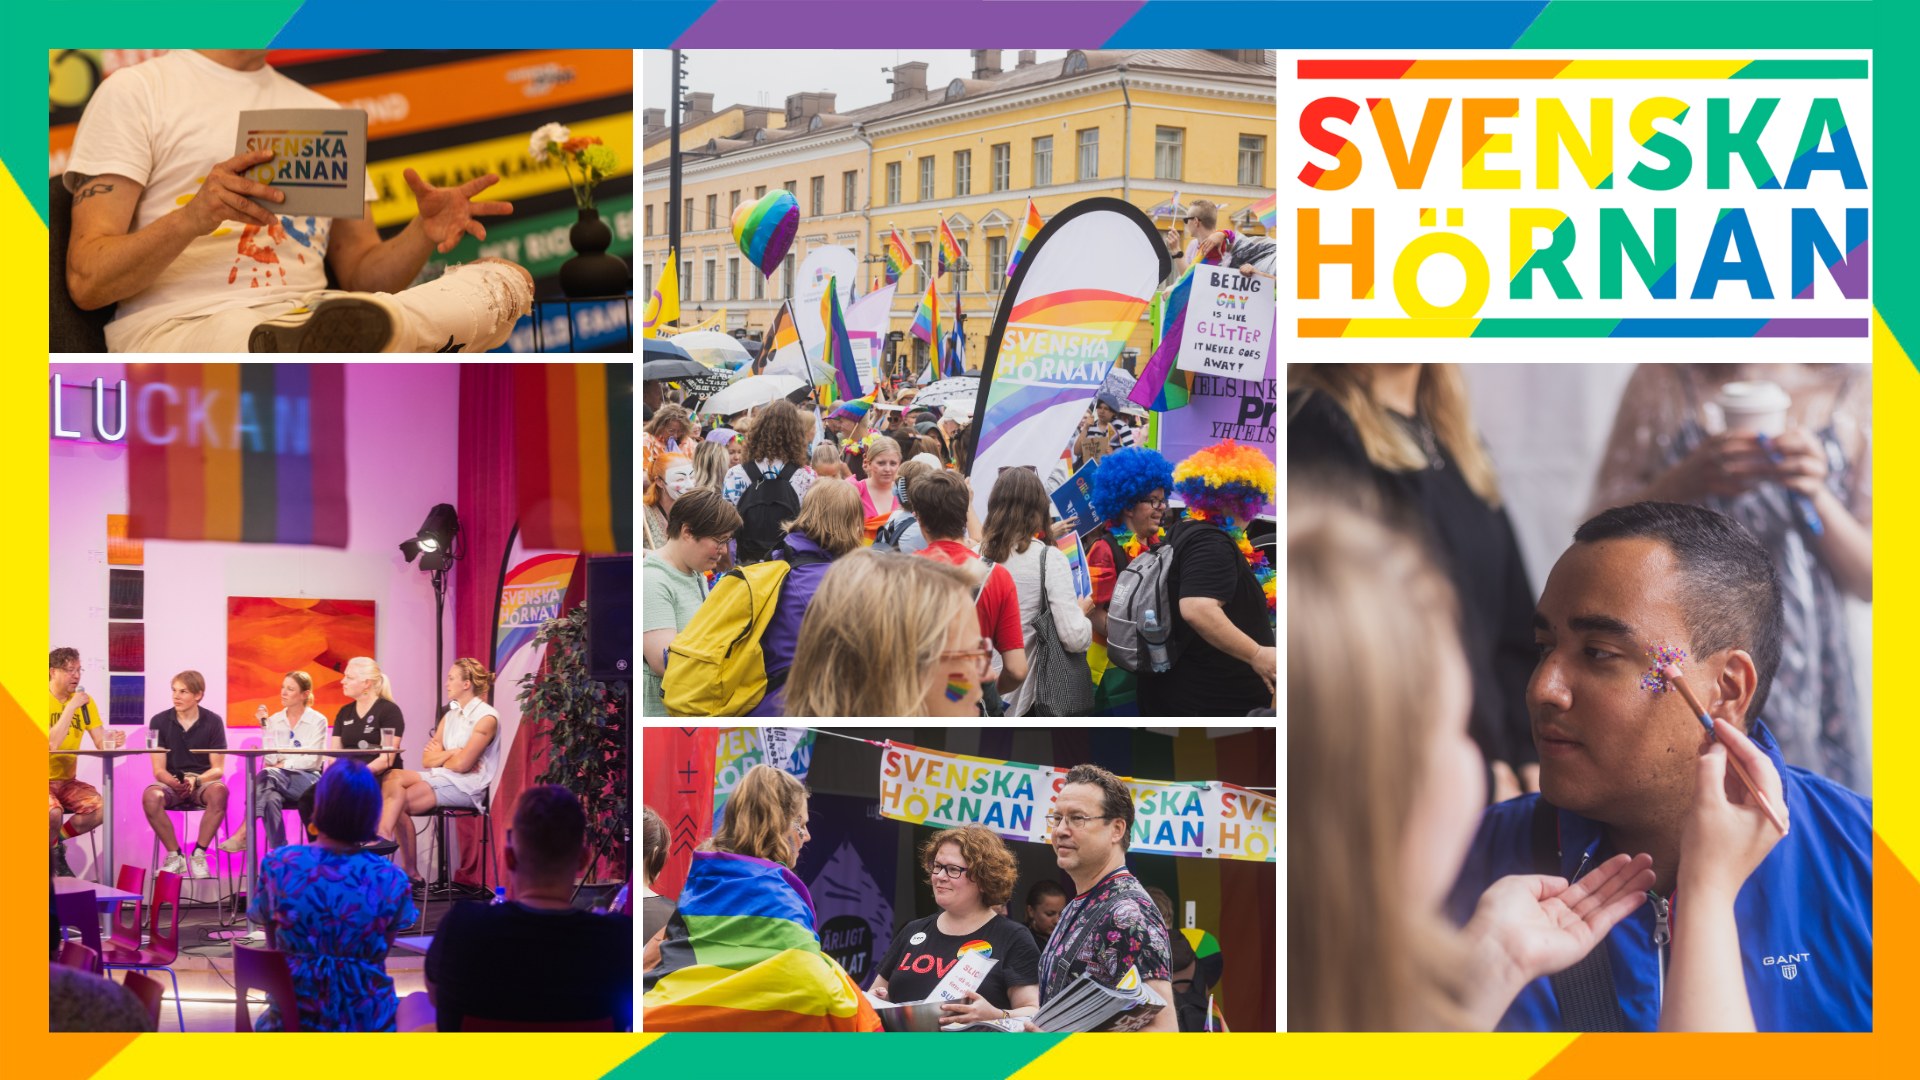 Bildkollage från tidigare års parad och prideprogram samt logon för Svenska hörnan i regnbågens färger.